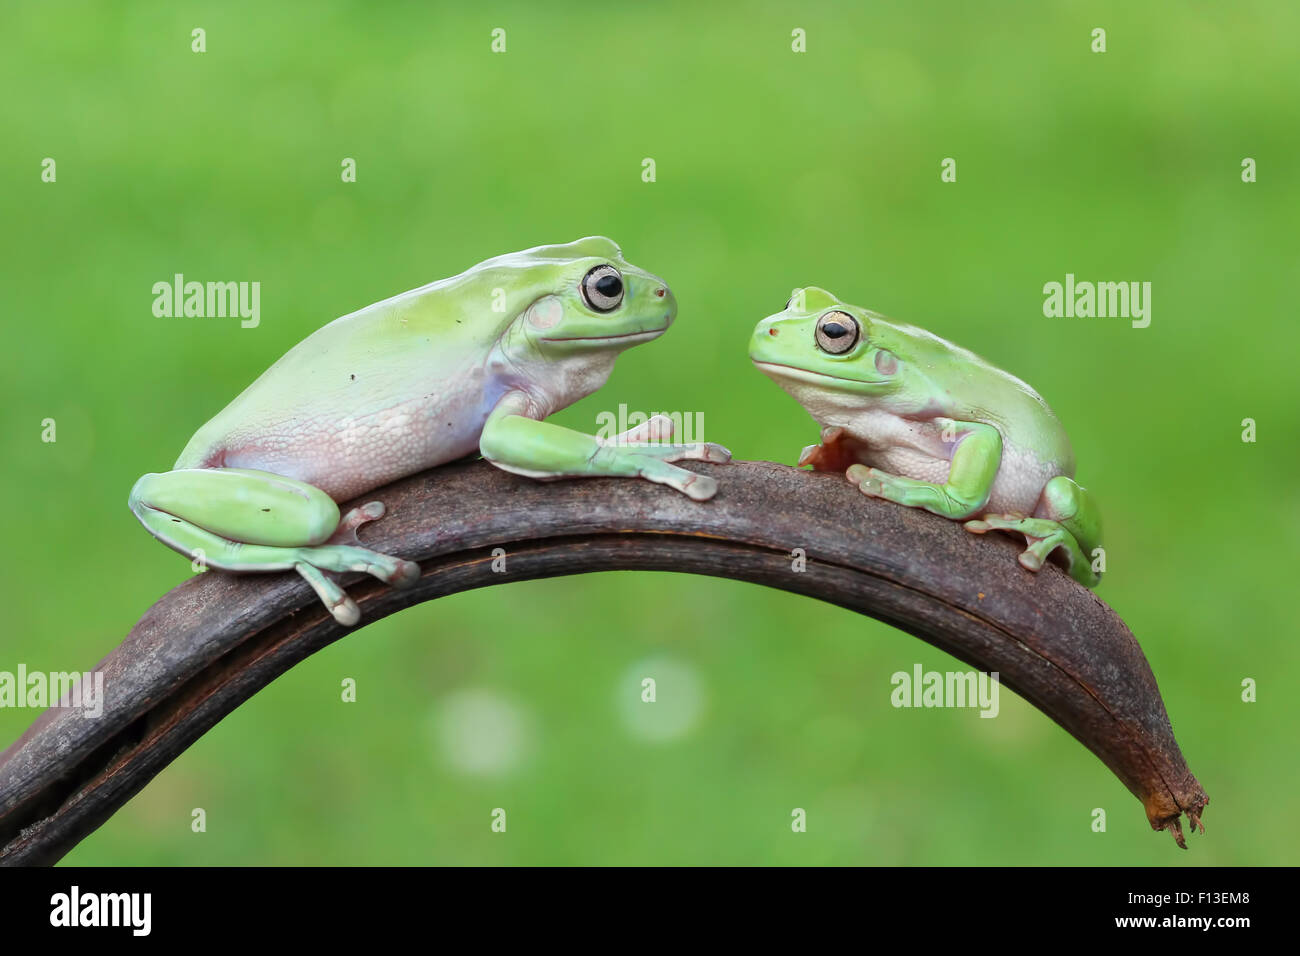 Dos ranas de árbol sentado en una planta mirarse Foto de stock